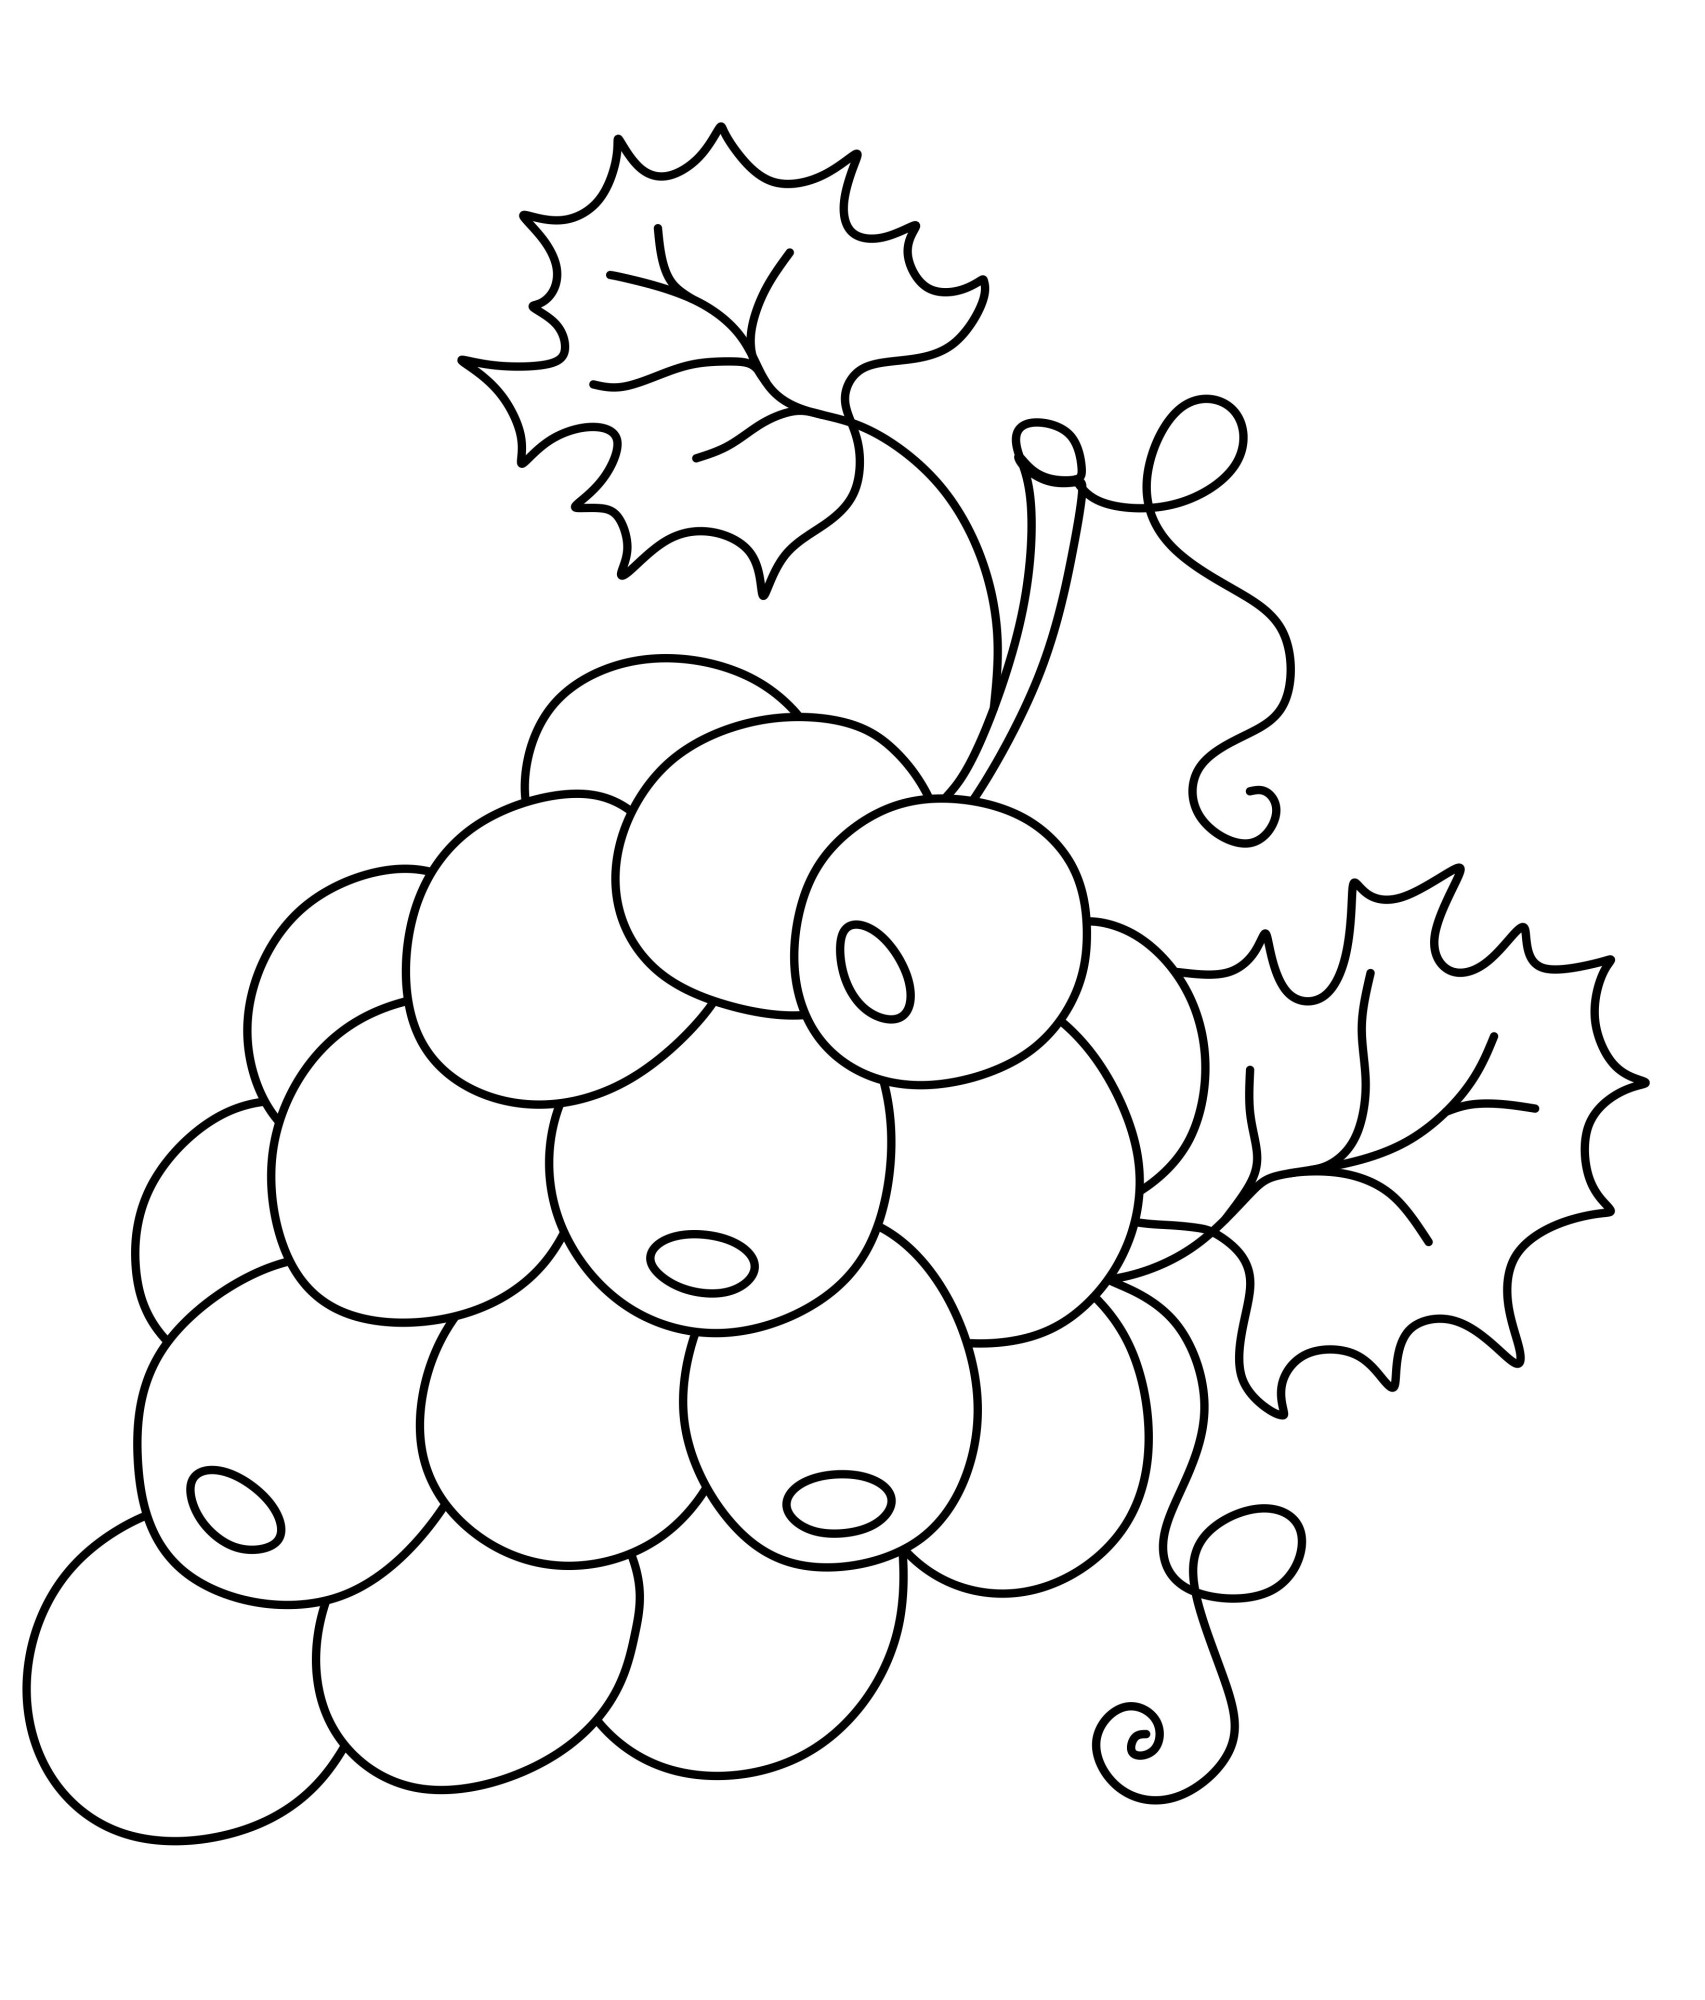 Раскраска для детей: фермерская виноградная гроздь